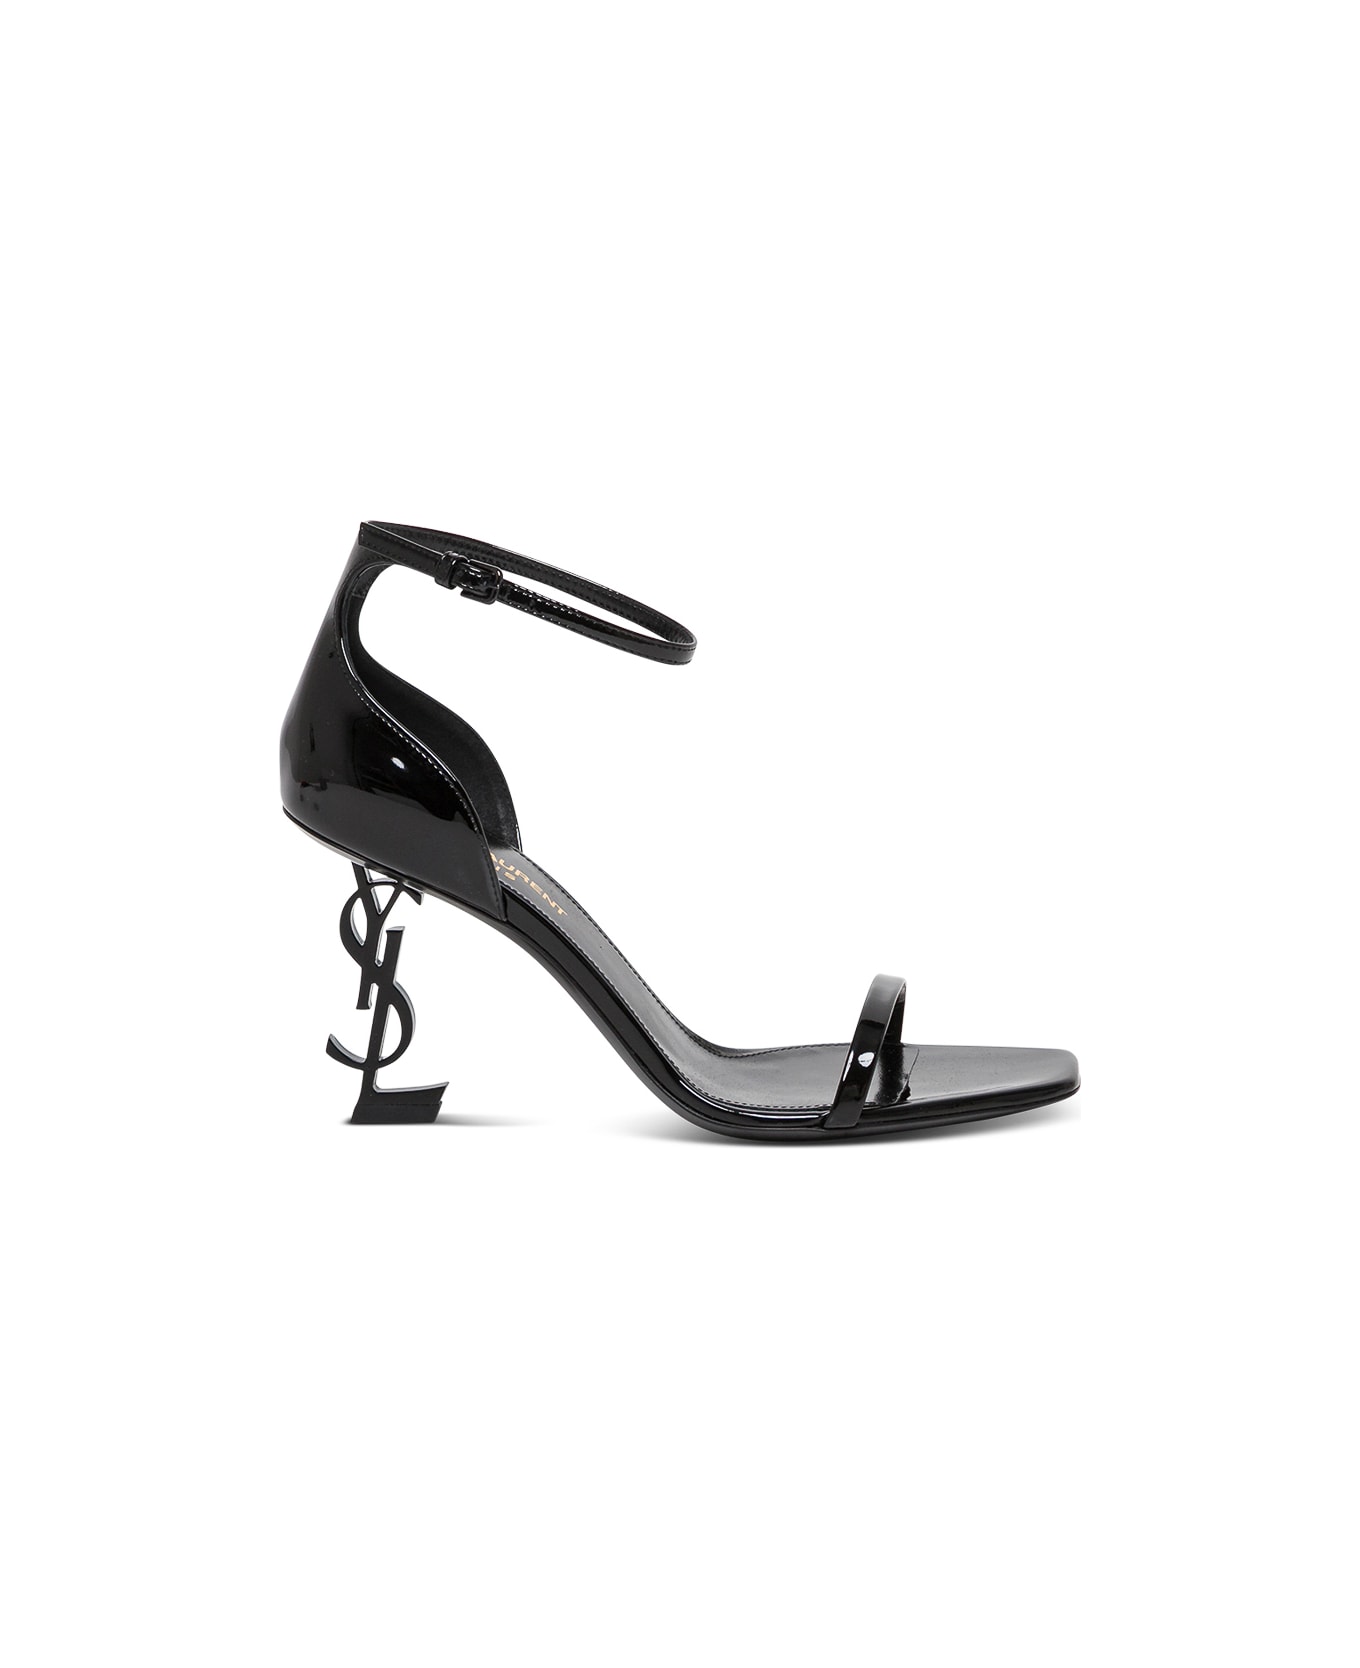 Saint Laurent Opyum Black Patent Leather Sandals - Black